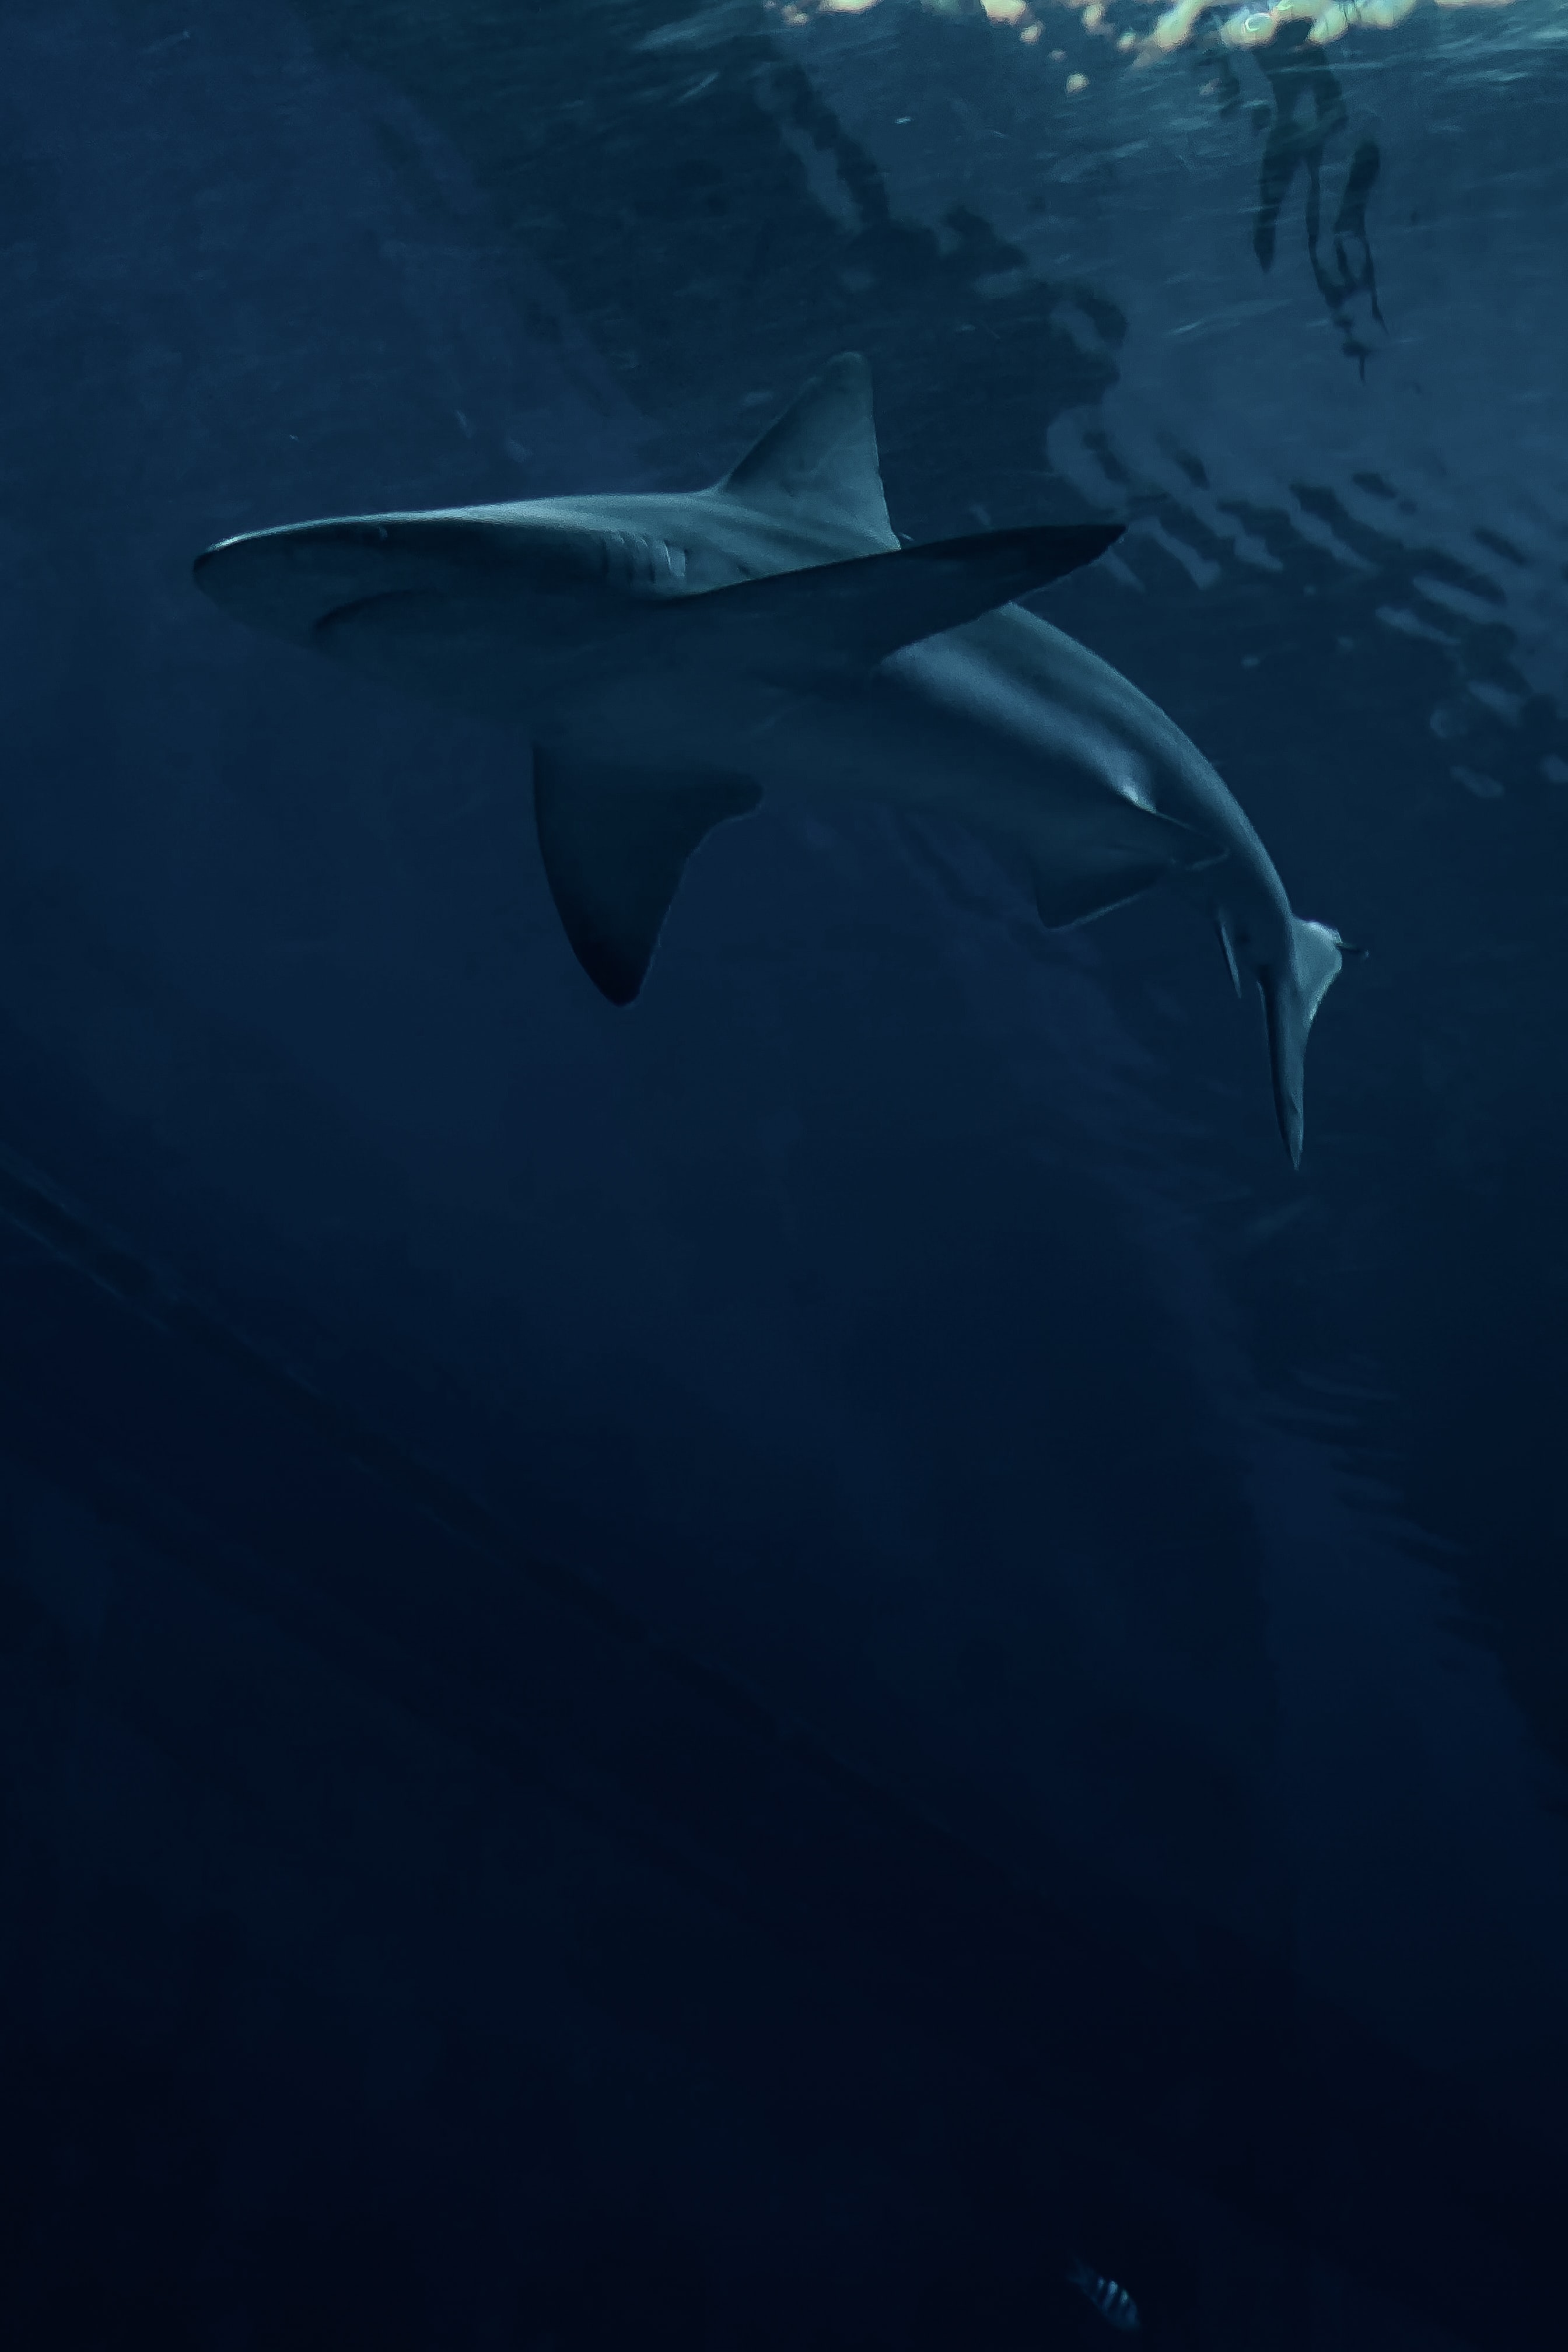 99740 免費下載壁紙 鲨鱼, 鱼, 捕食者, 黑暗的, 黑暗, 一条鱼 屏保和圖片